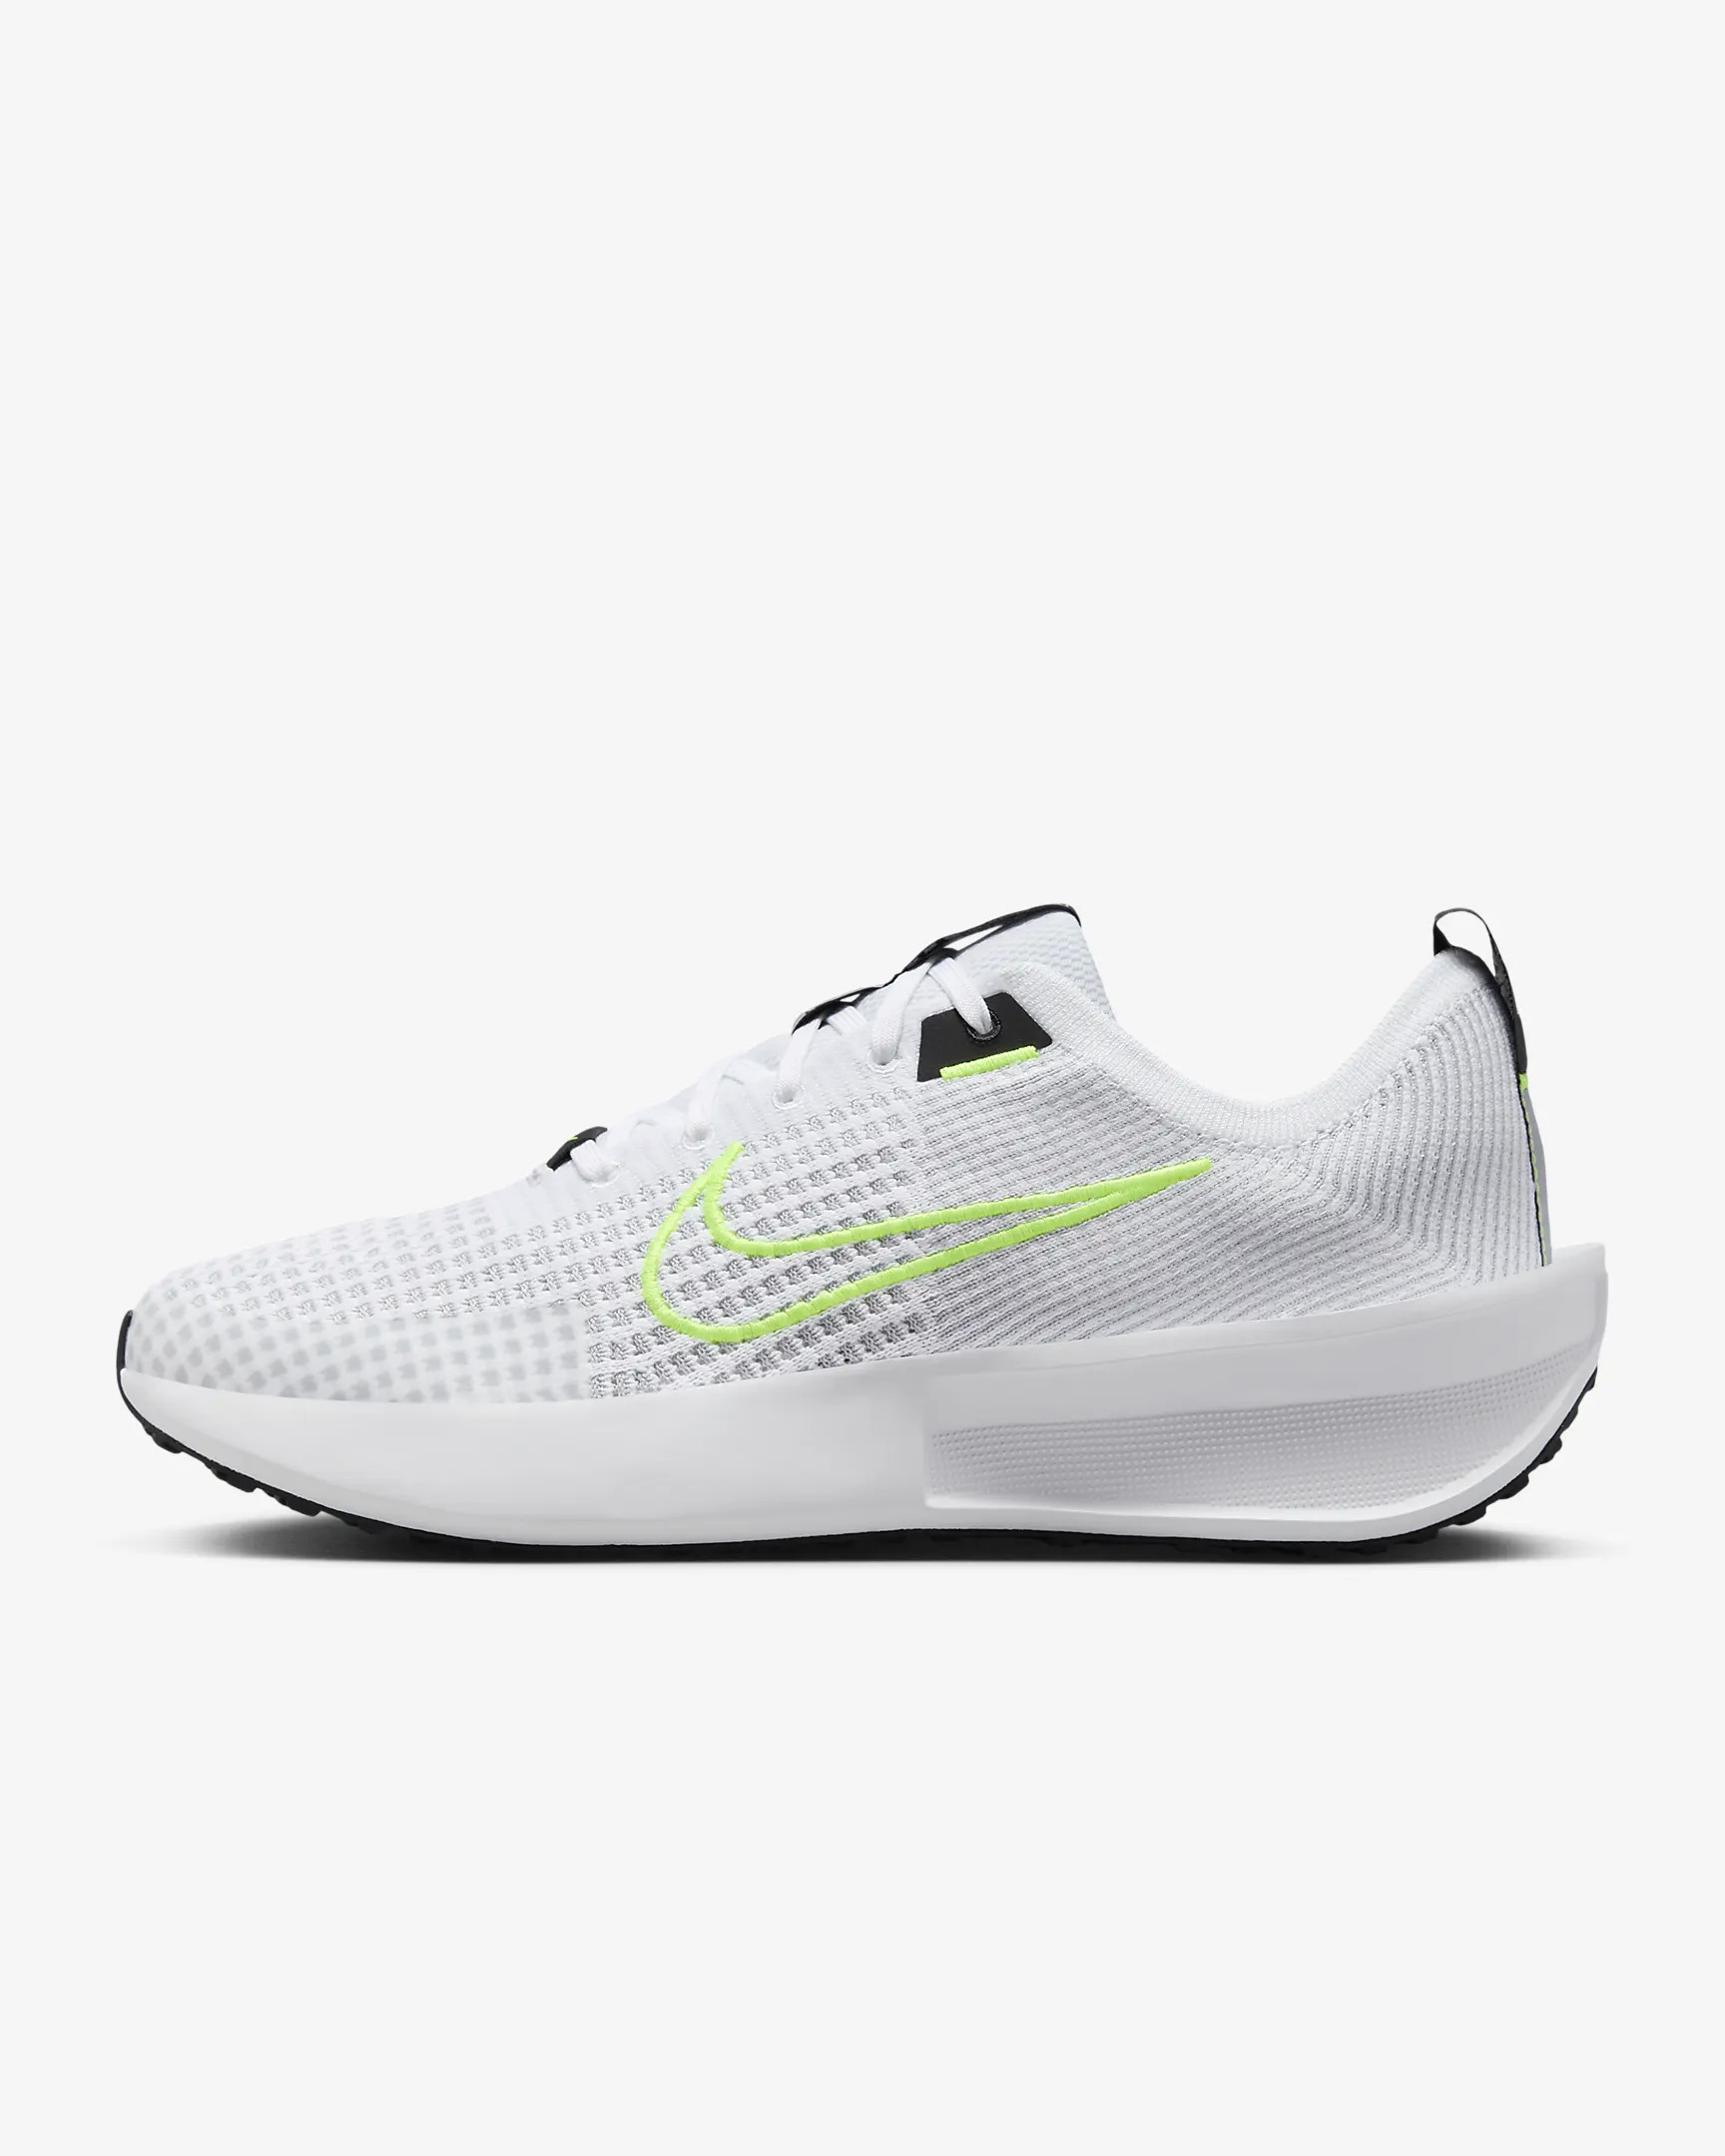 Nike Interact Run Men's Road Running Shoes + Free Shipping $50.97